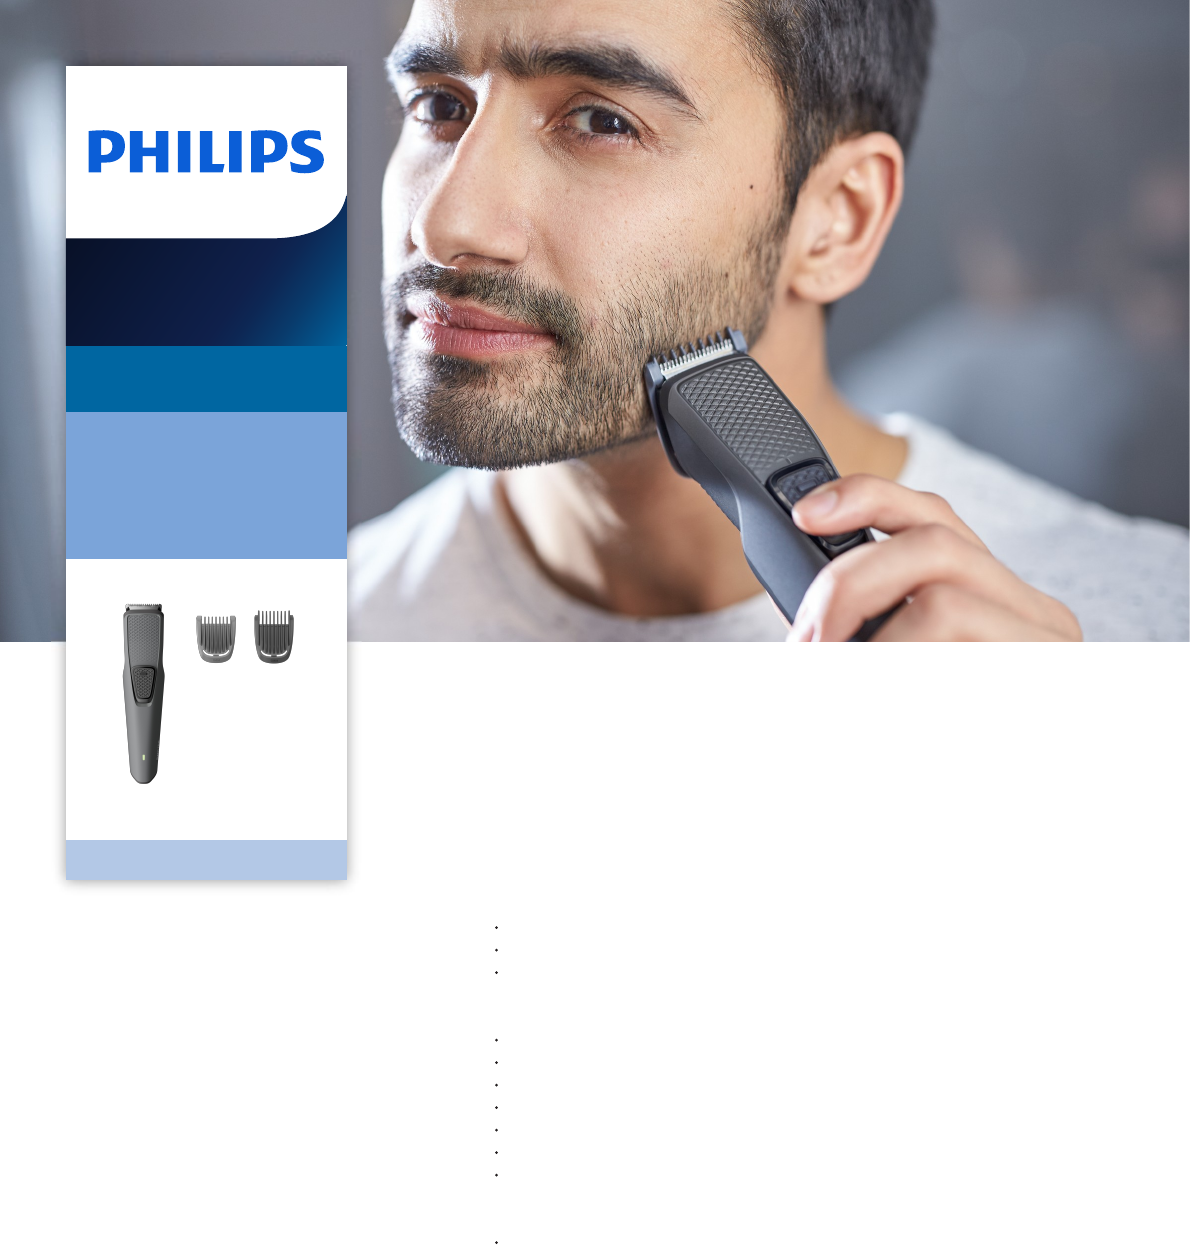 trimmer philips bt1210